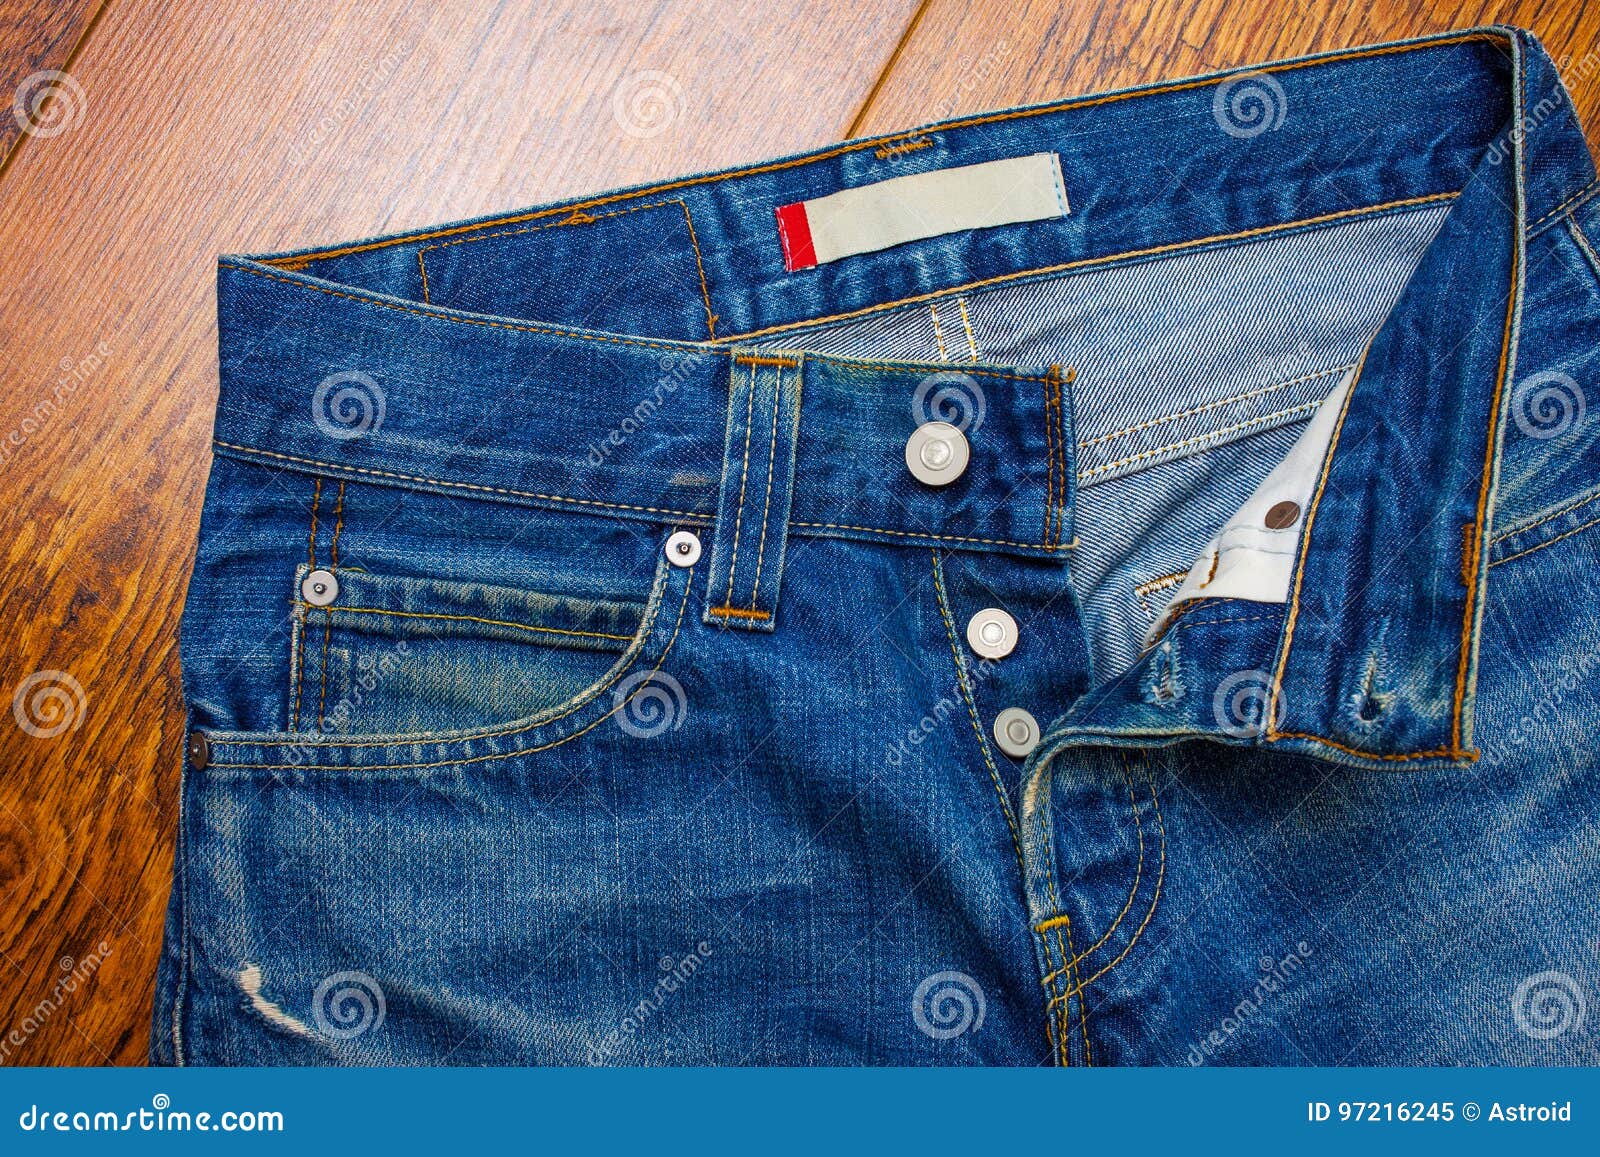 Unbuttoned jeans stock image. Image of indigo, isolated - 97216245